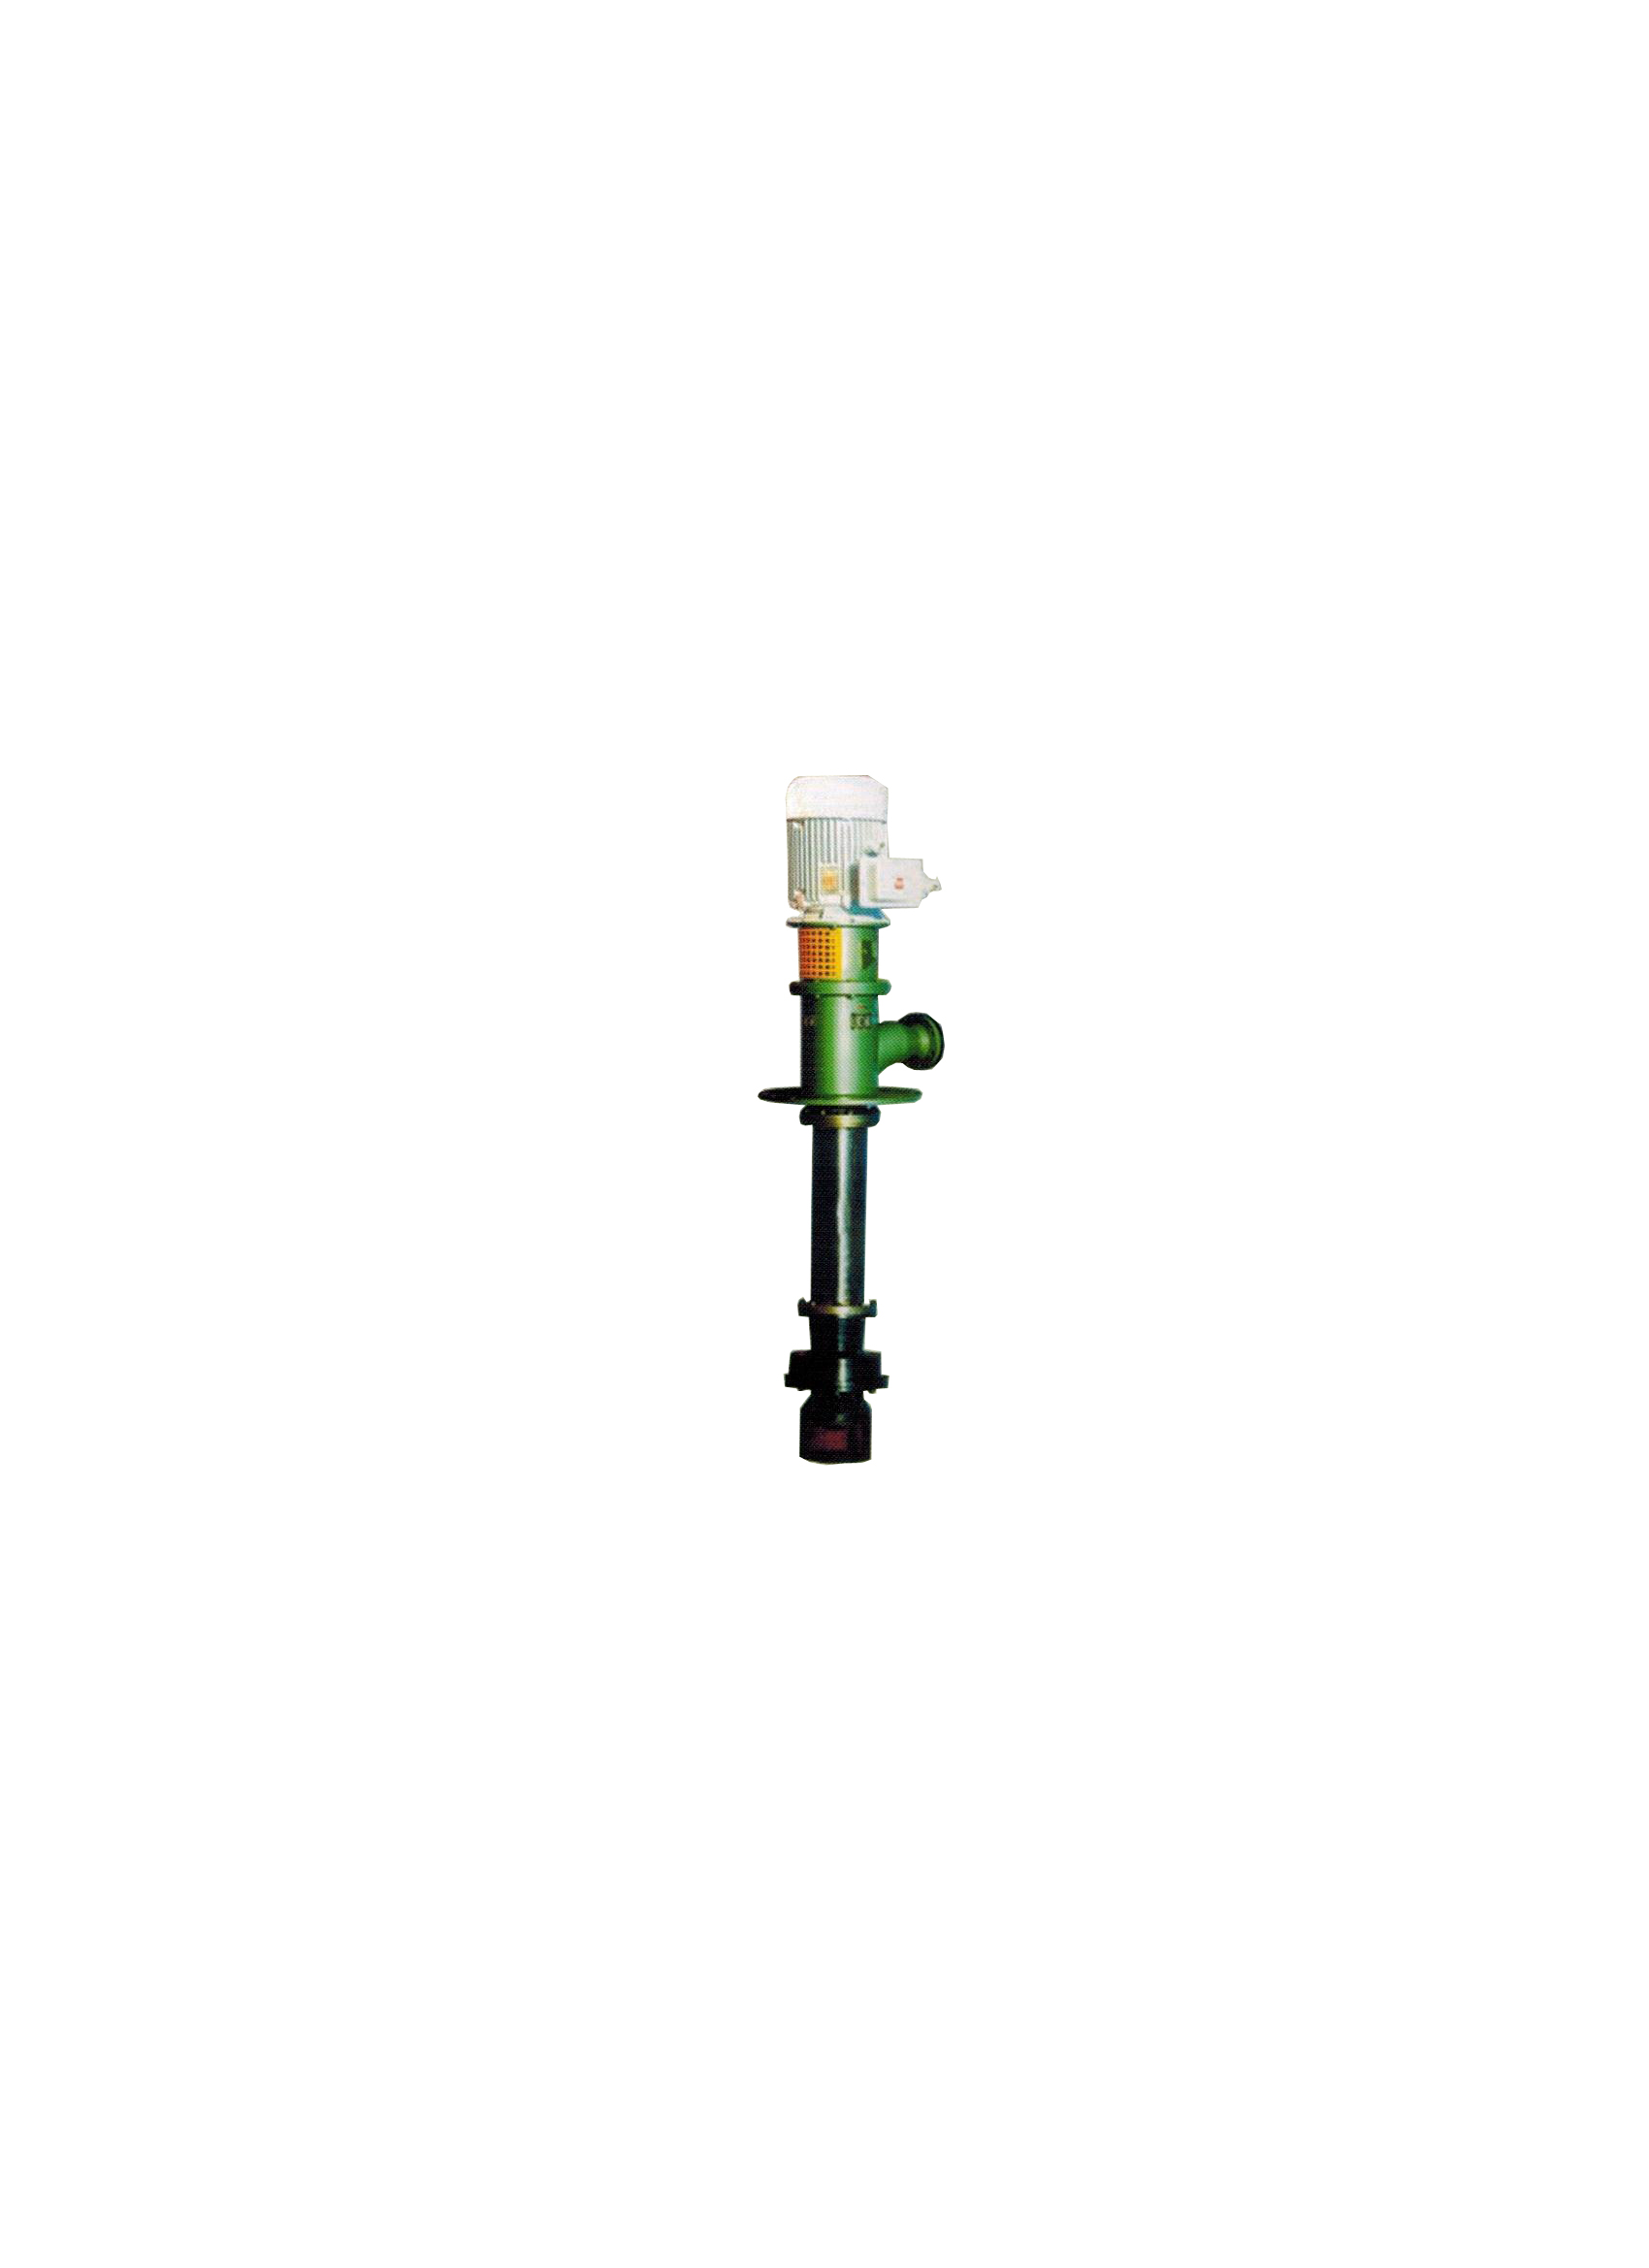 润滑油泵、LDX系列液下式润滑油泵长沙奥凯水泵厂可提供定制服务